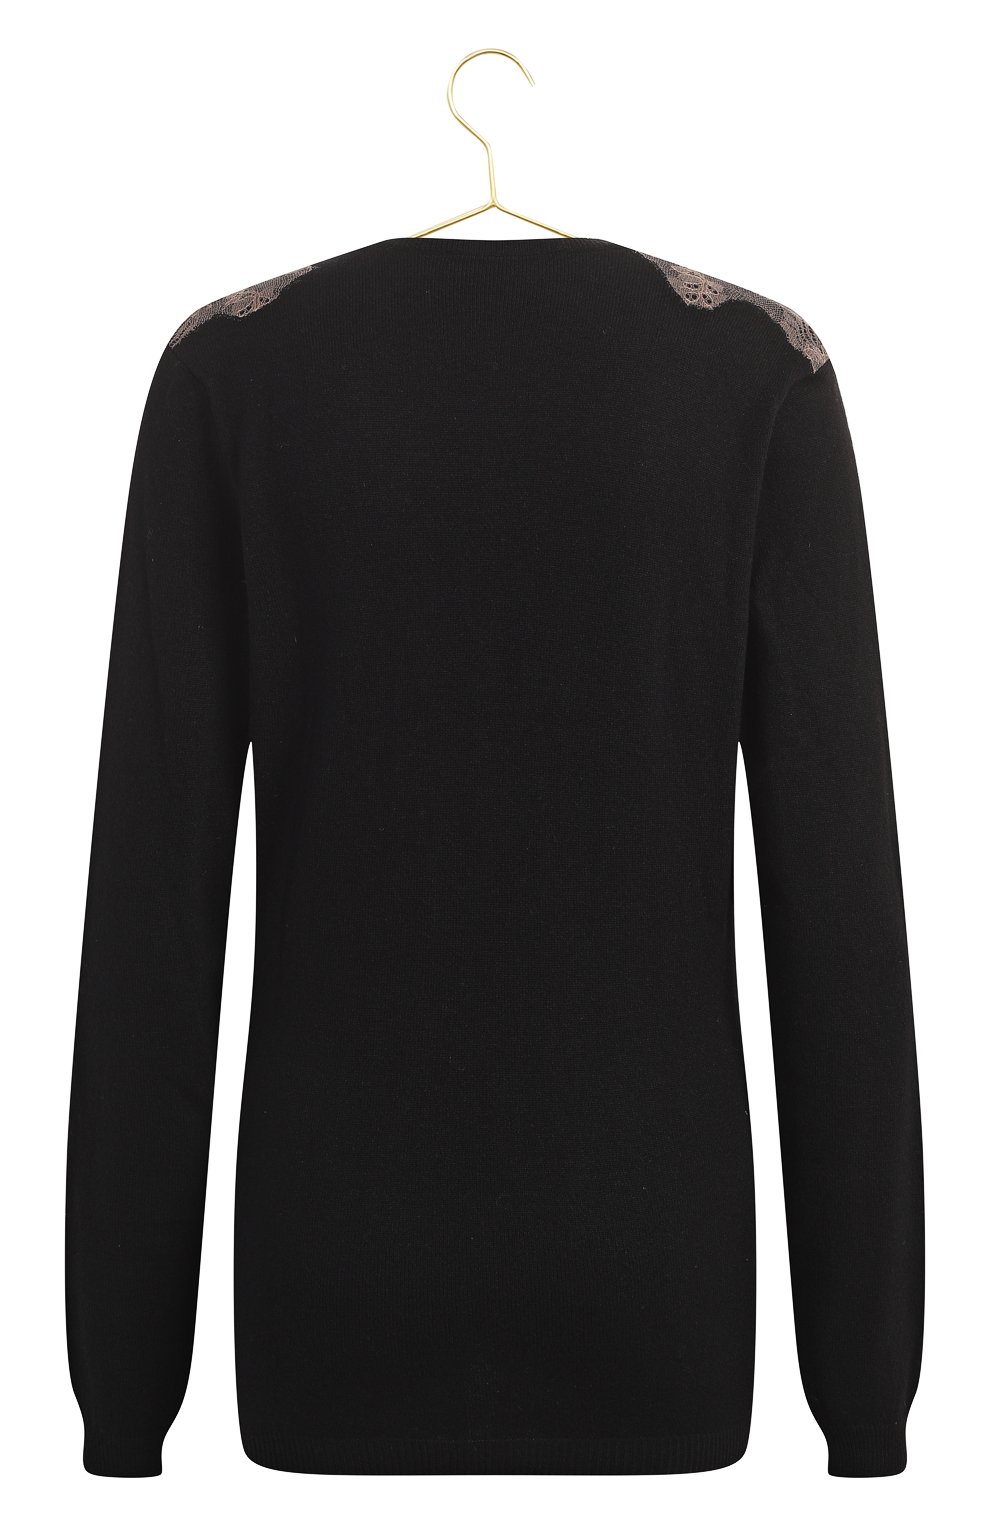 Пуловер из шерсти и шелка | Valentino | Чёрный - 2